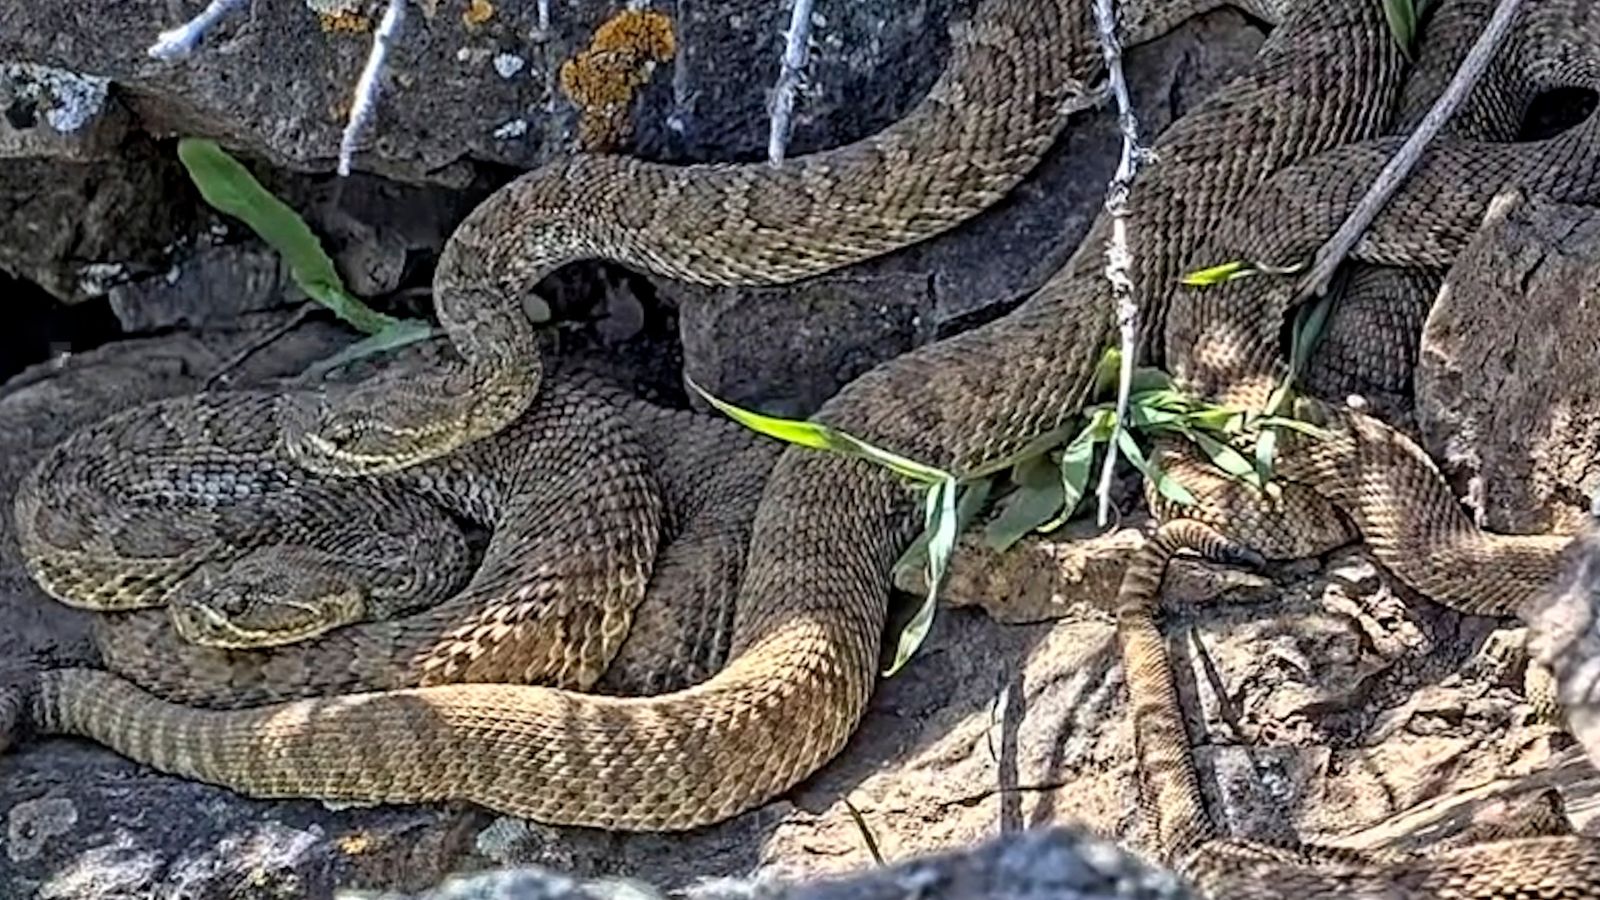 Snake ‘mega den’ webcam could leave viewers rattled | US News